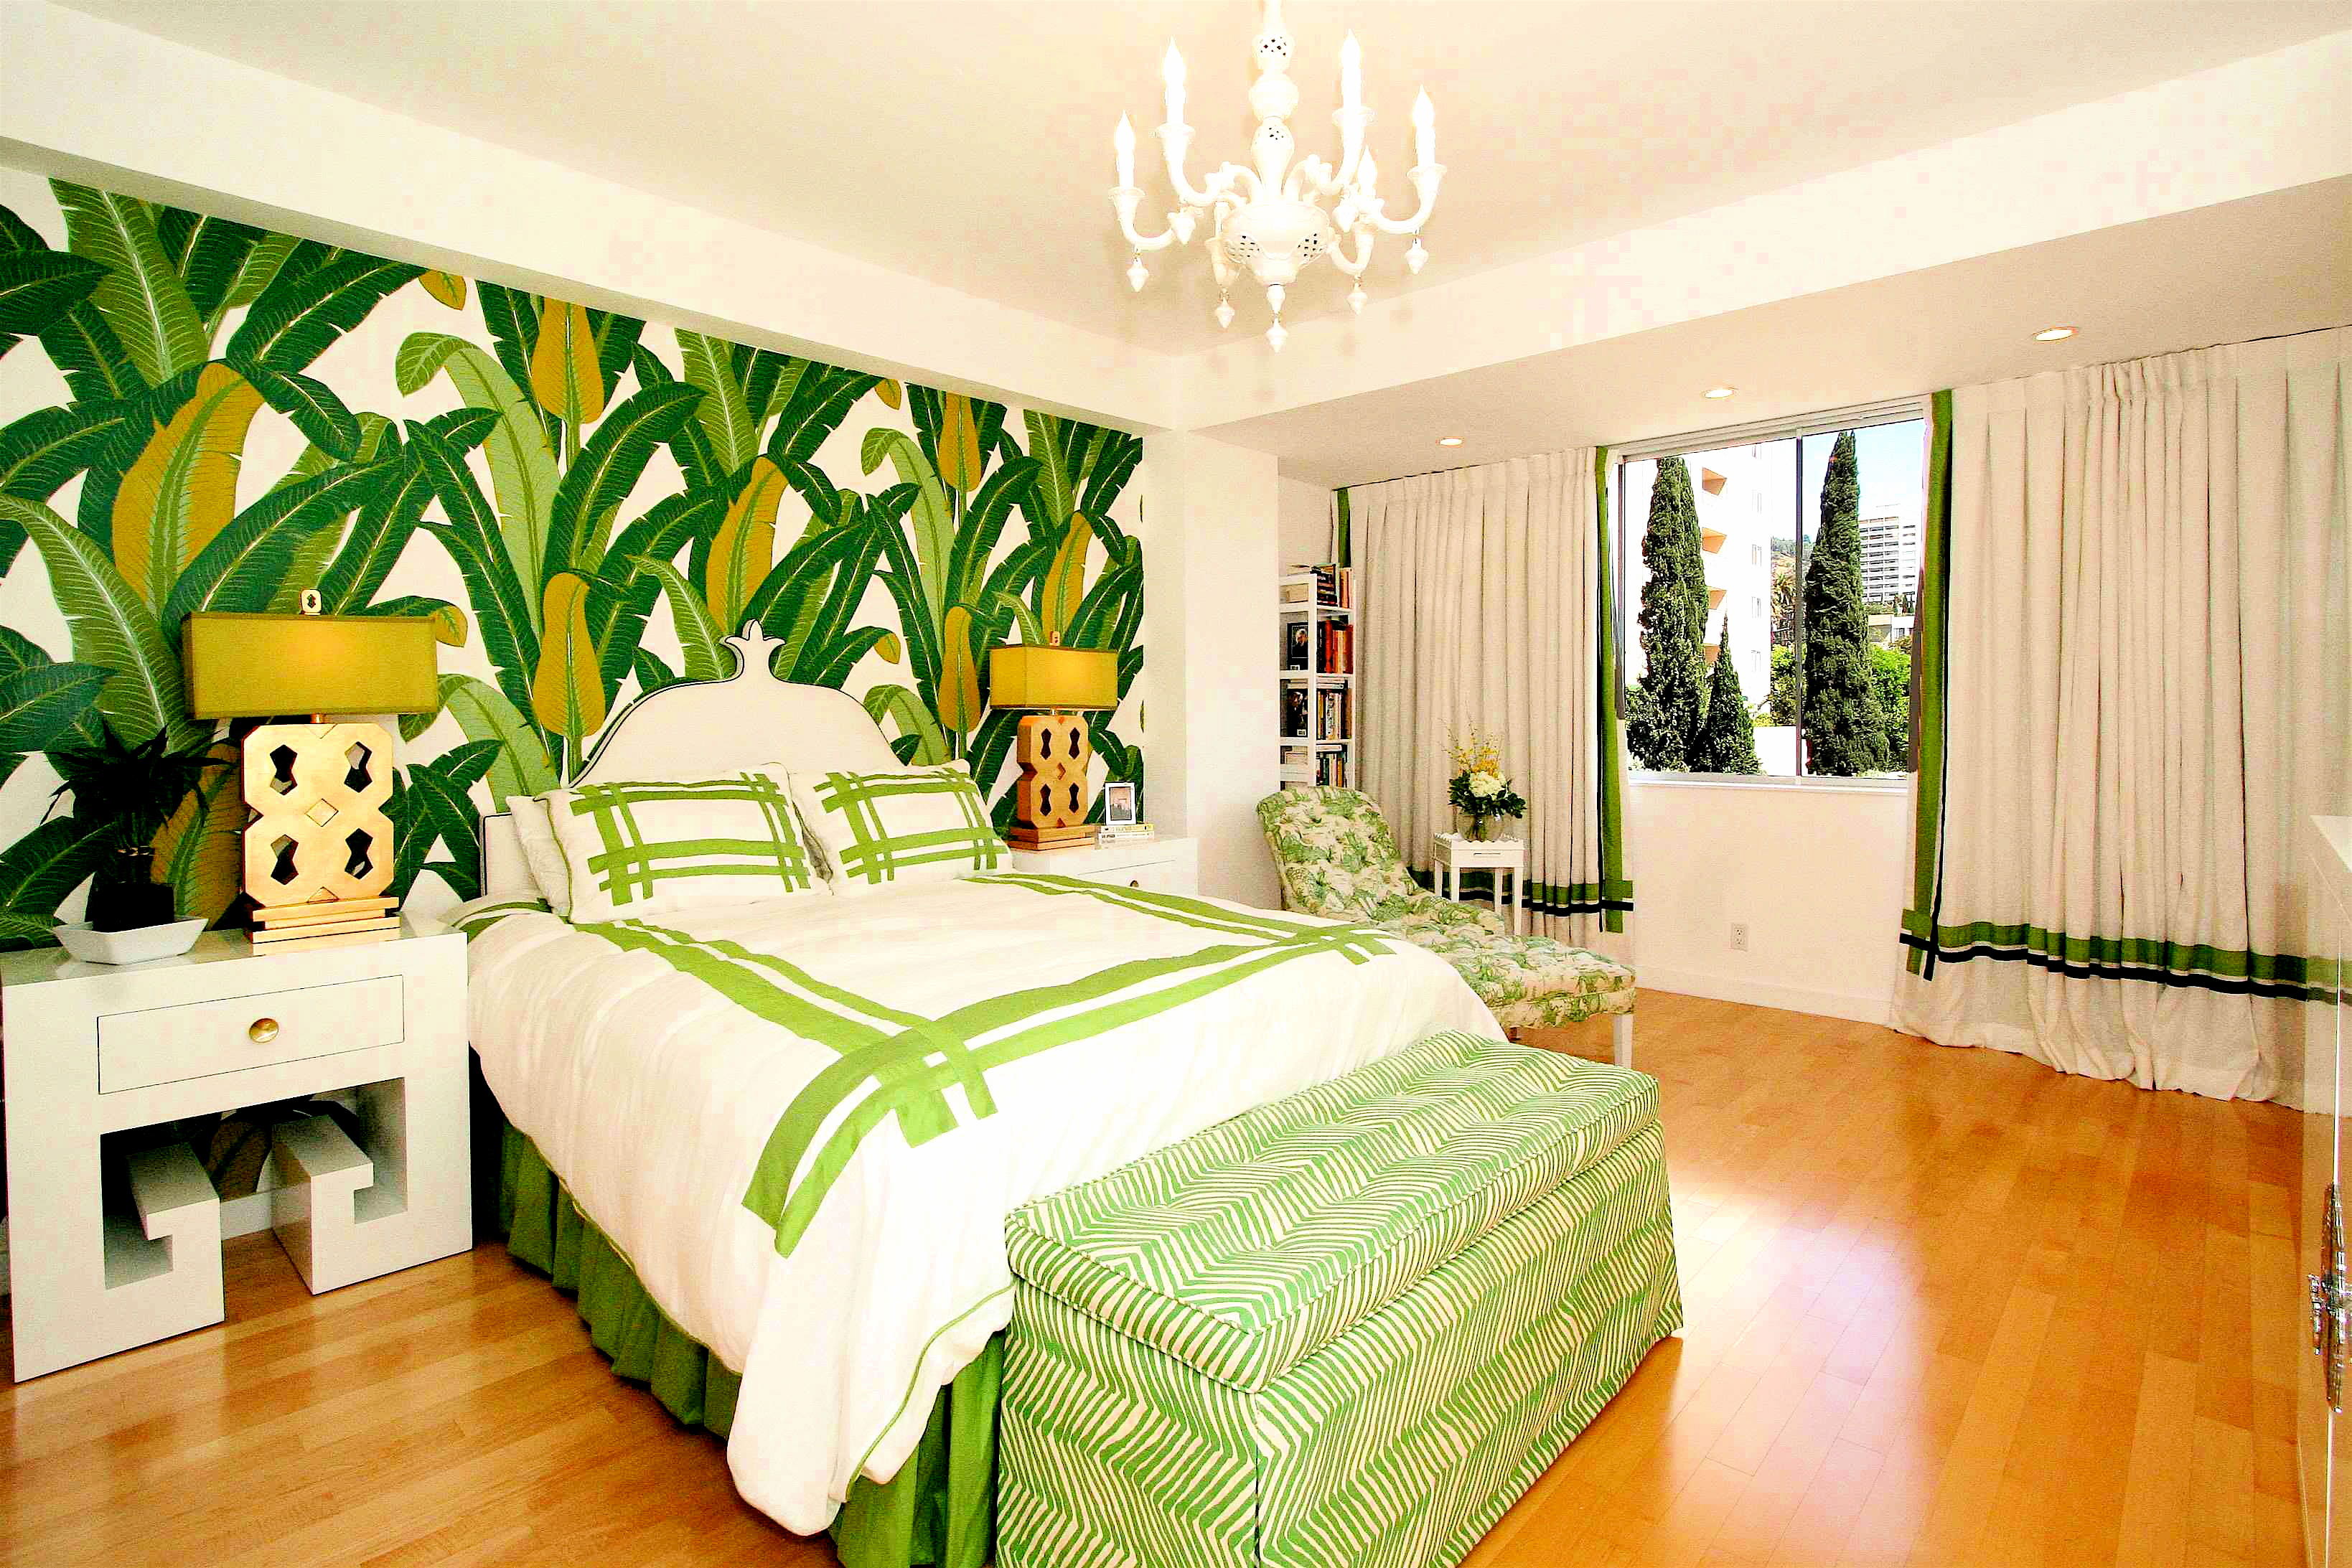 спальня в зеленых тонах дизайн